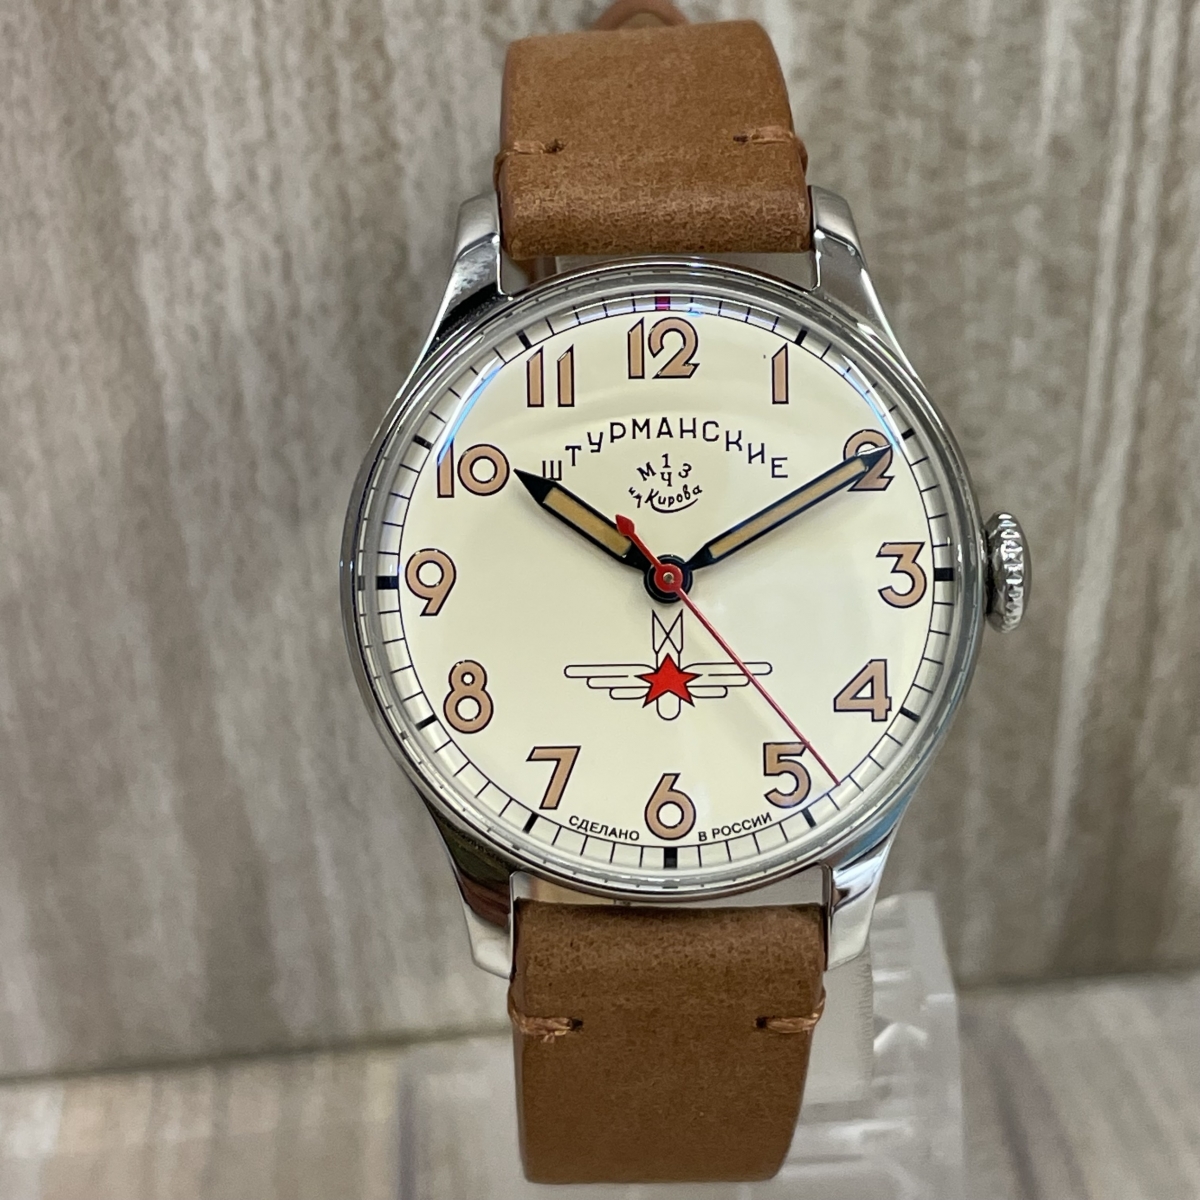 シュトゥルマンスキーのSS 2609.145.01 ガガーリン着用モデル復刻 手巻き時計の買取実績です。